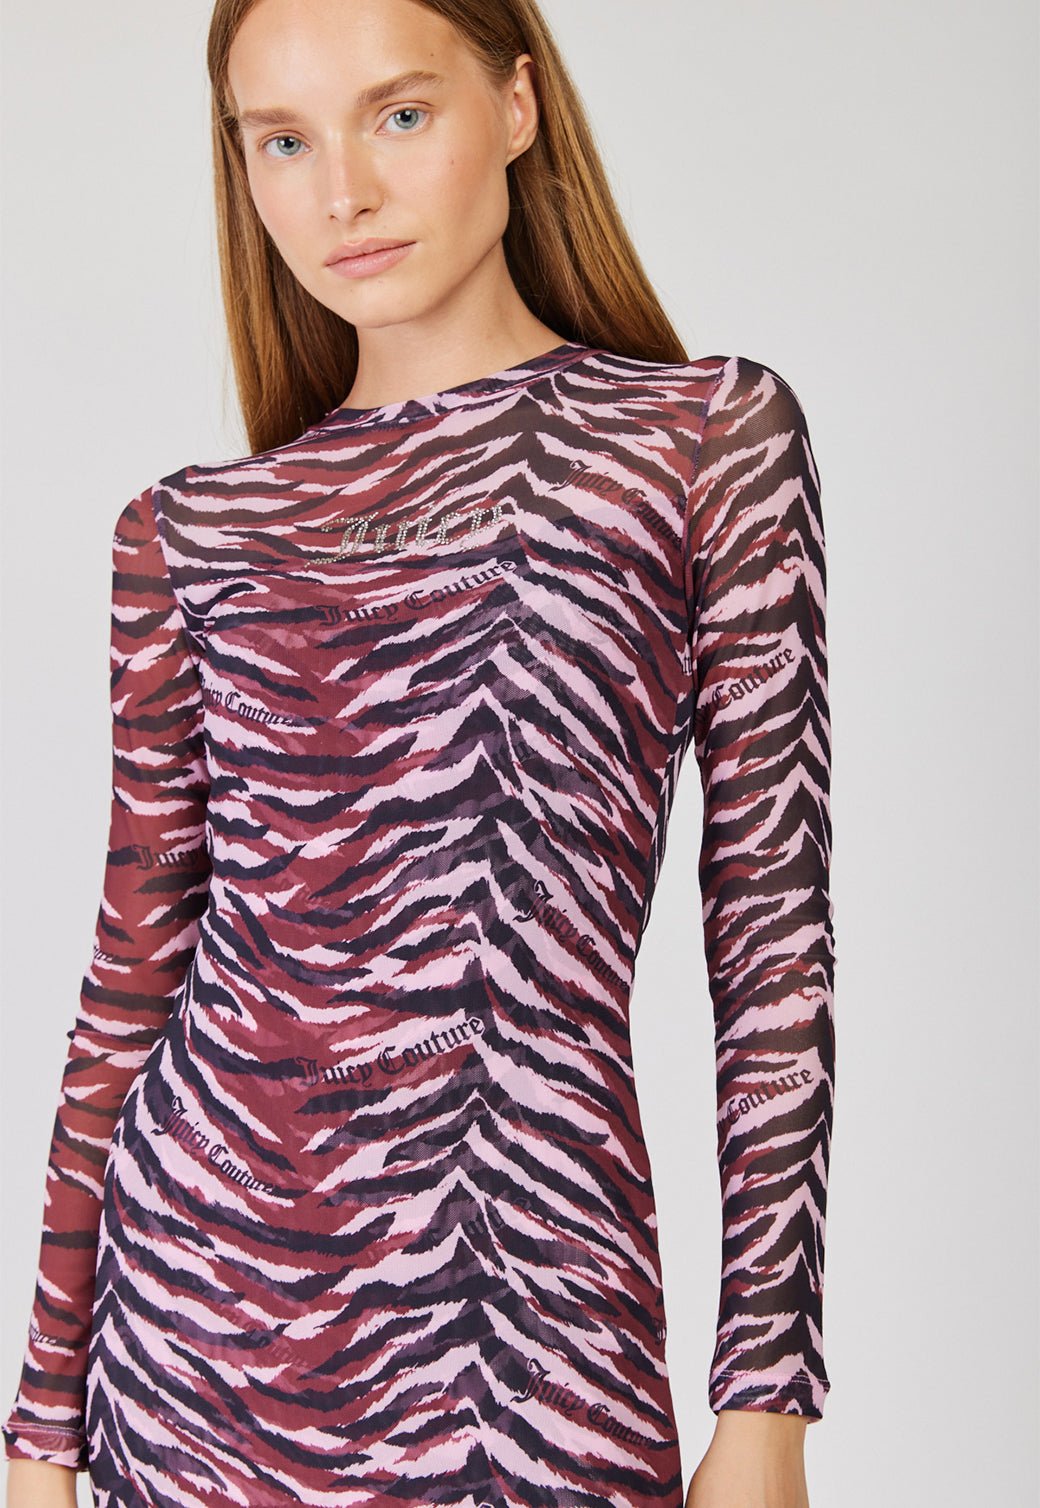 שמלת שיפון שקפקפה Tiger נשים - Juicy Couture